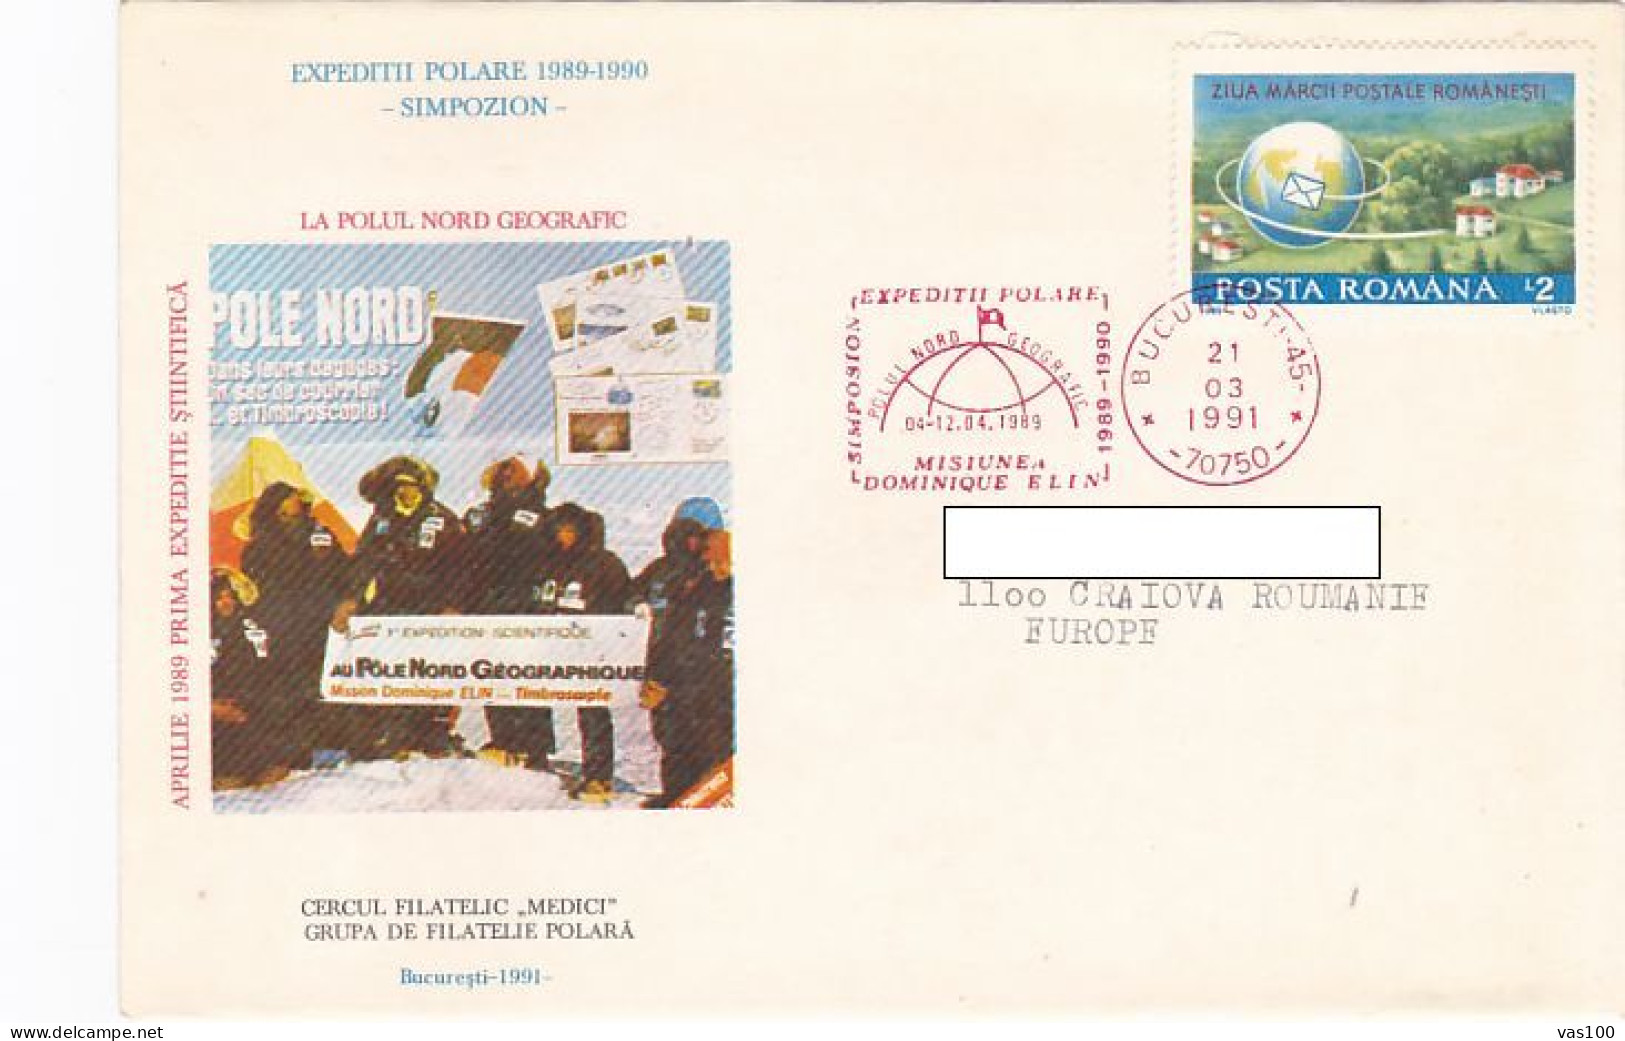 NORTH POLE, ARCTIC EXPEDITION, DOMINIQUE ELIN AT NORTH POLE, SPECIAL COVER, 1991, ROMANIA - Expediciones árticas